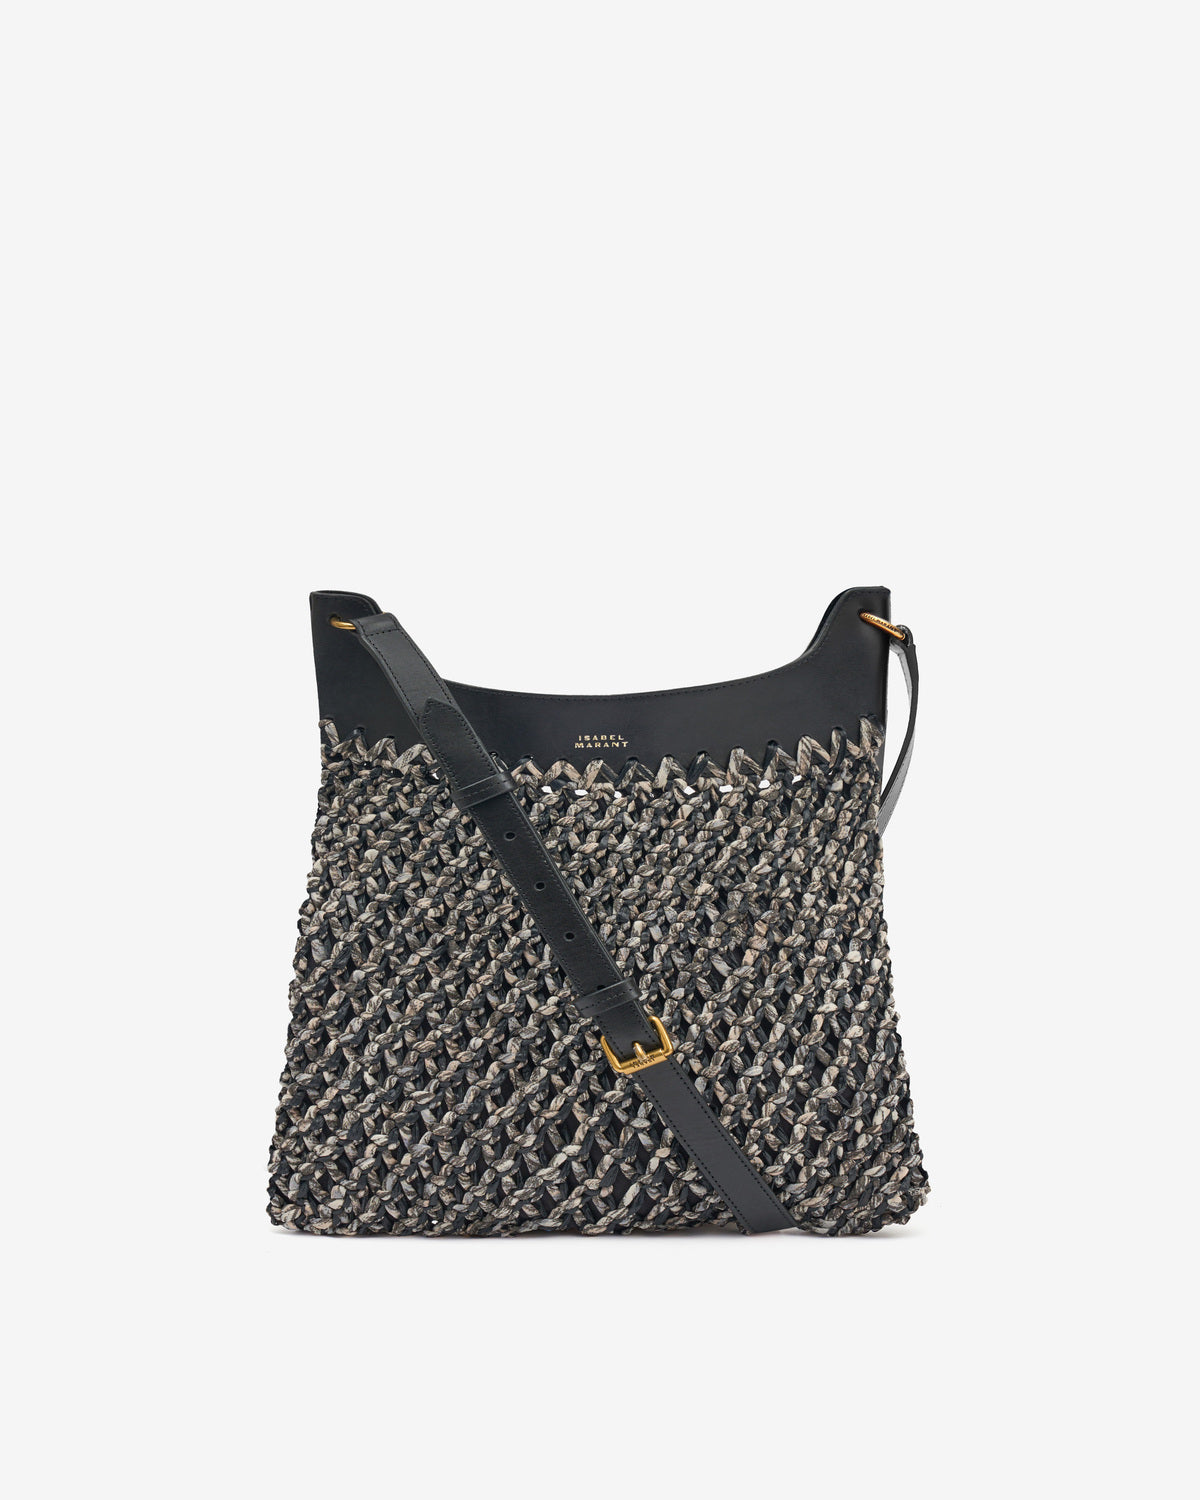 Amalfi bag Woman Black 6